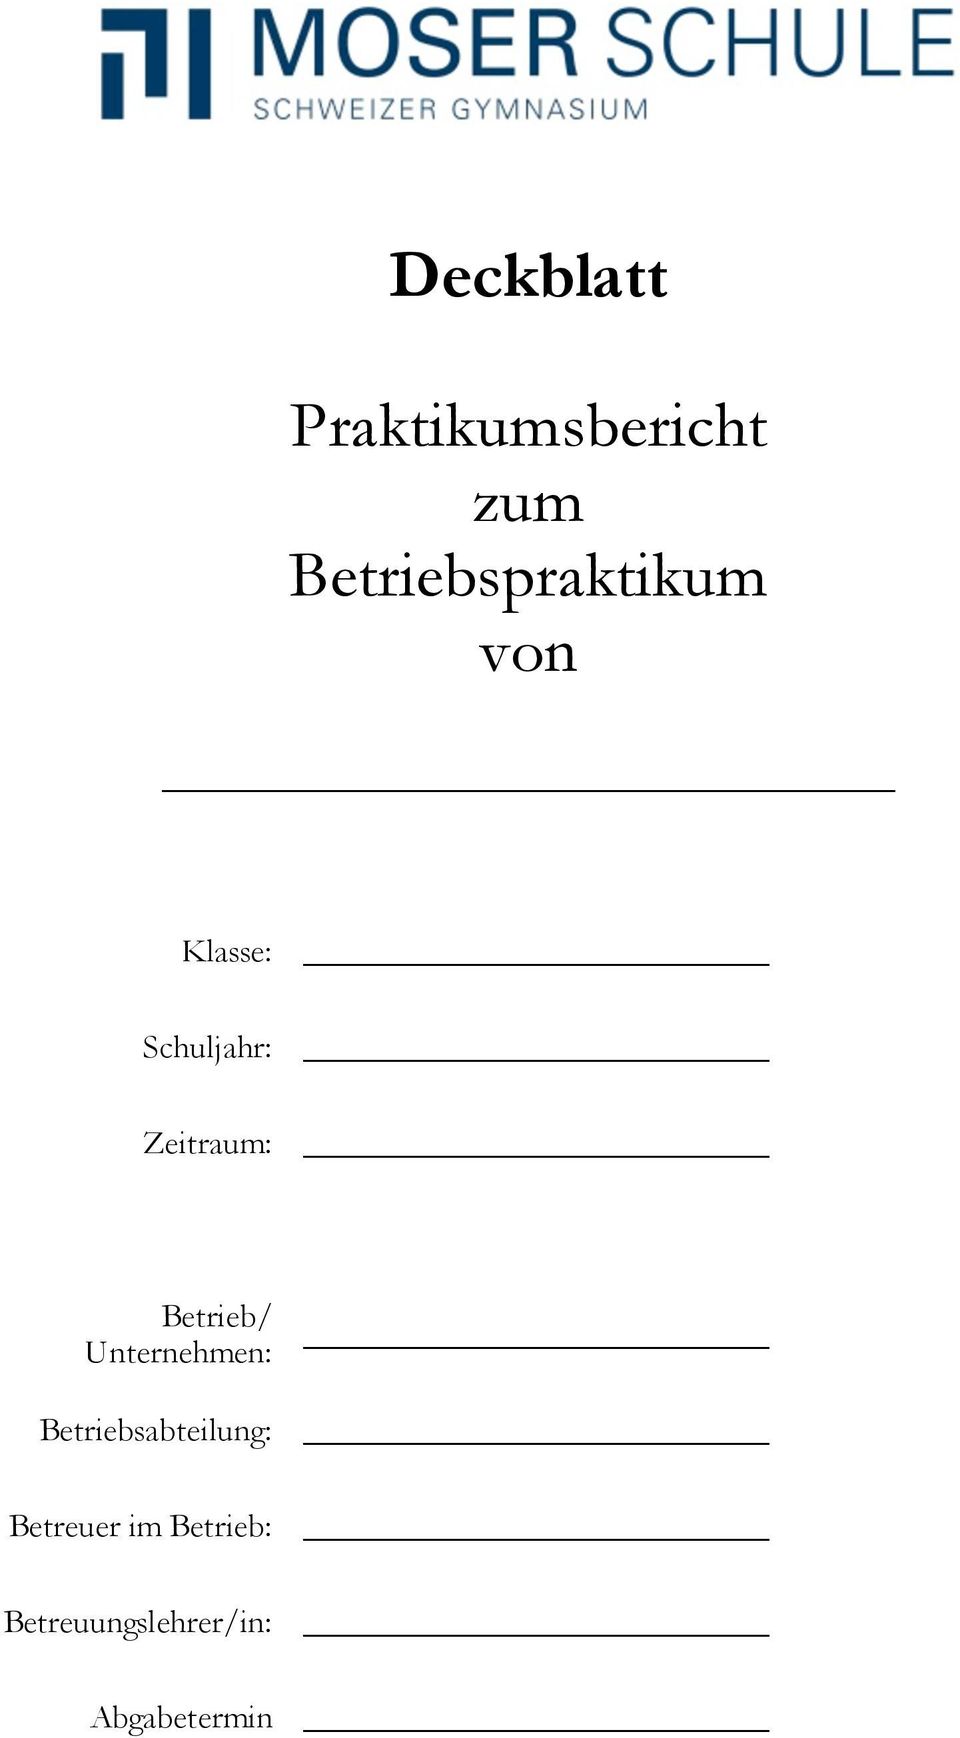 Deckblatt Praktikumsbericht Zum Betriebspraktikum Von Pdf